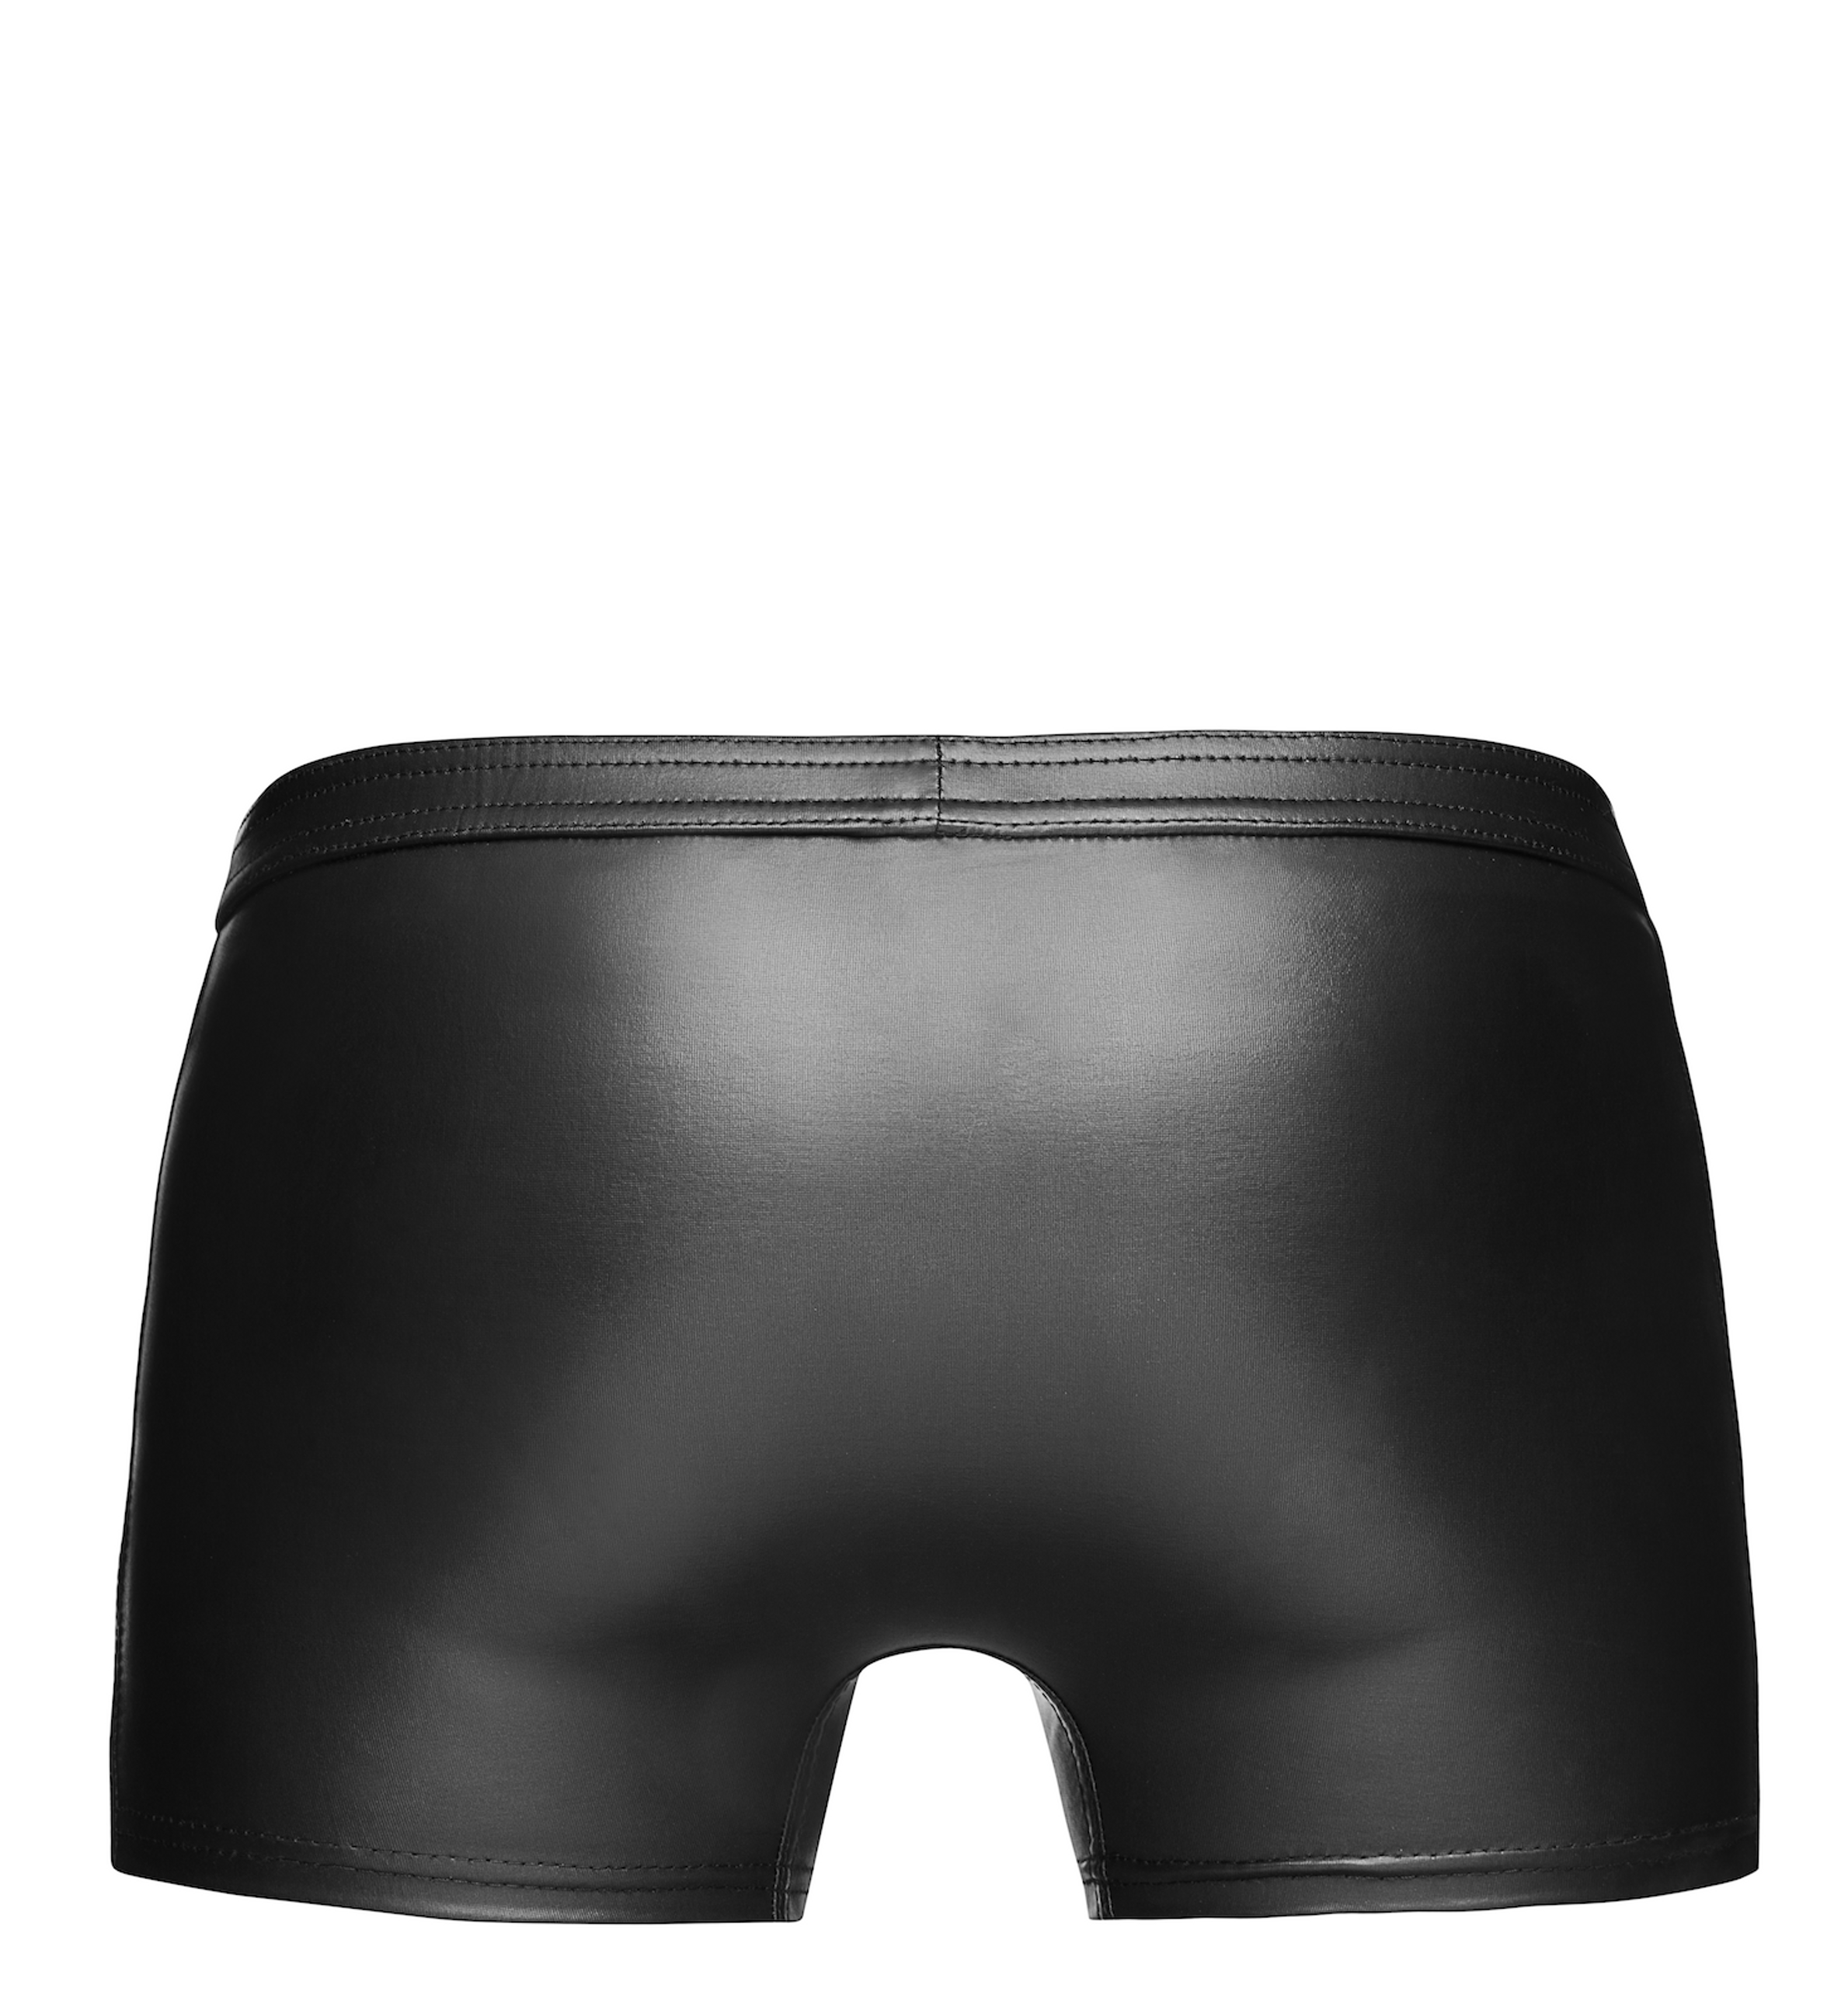 Noir Handmade H006 Sexy shorts mit heißen Details